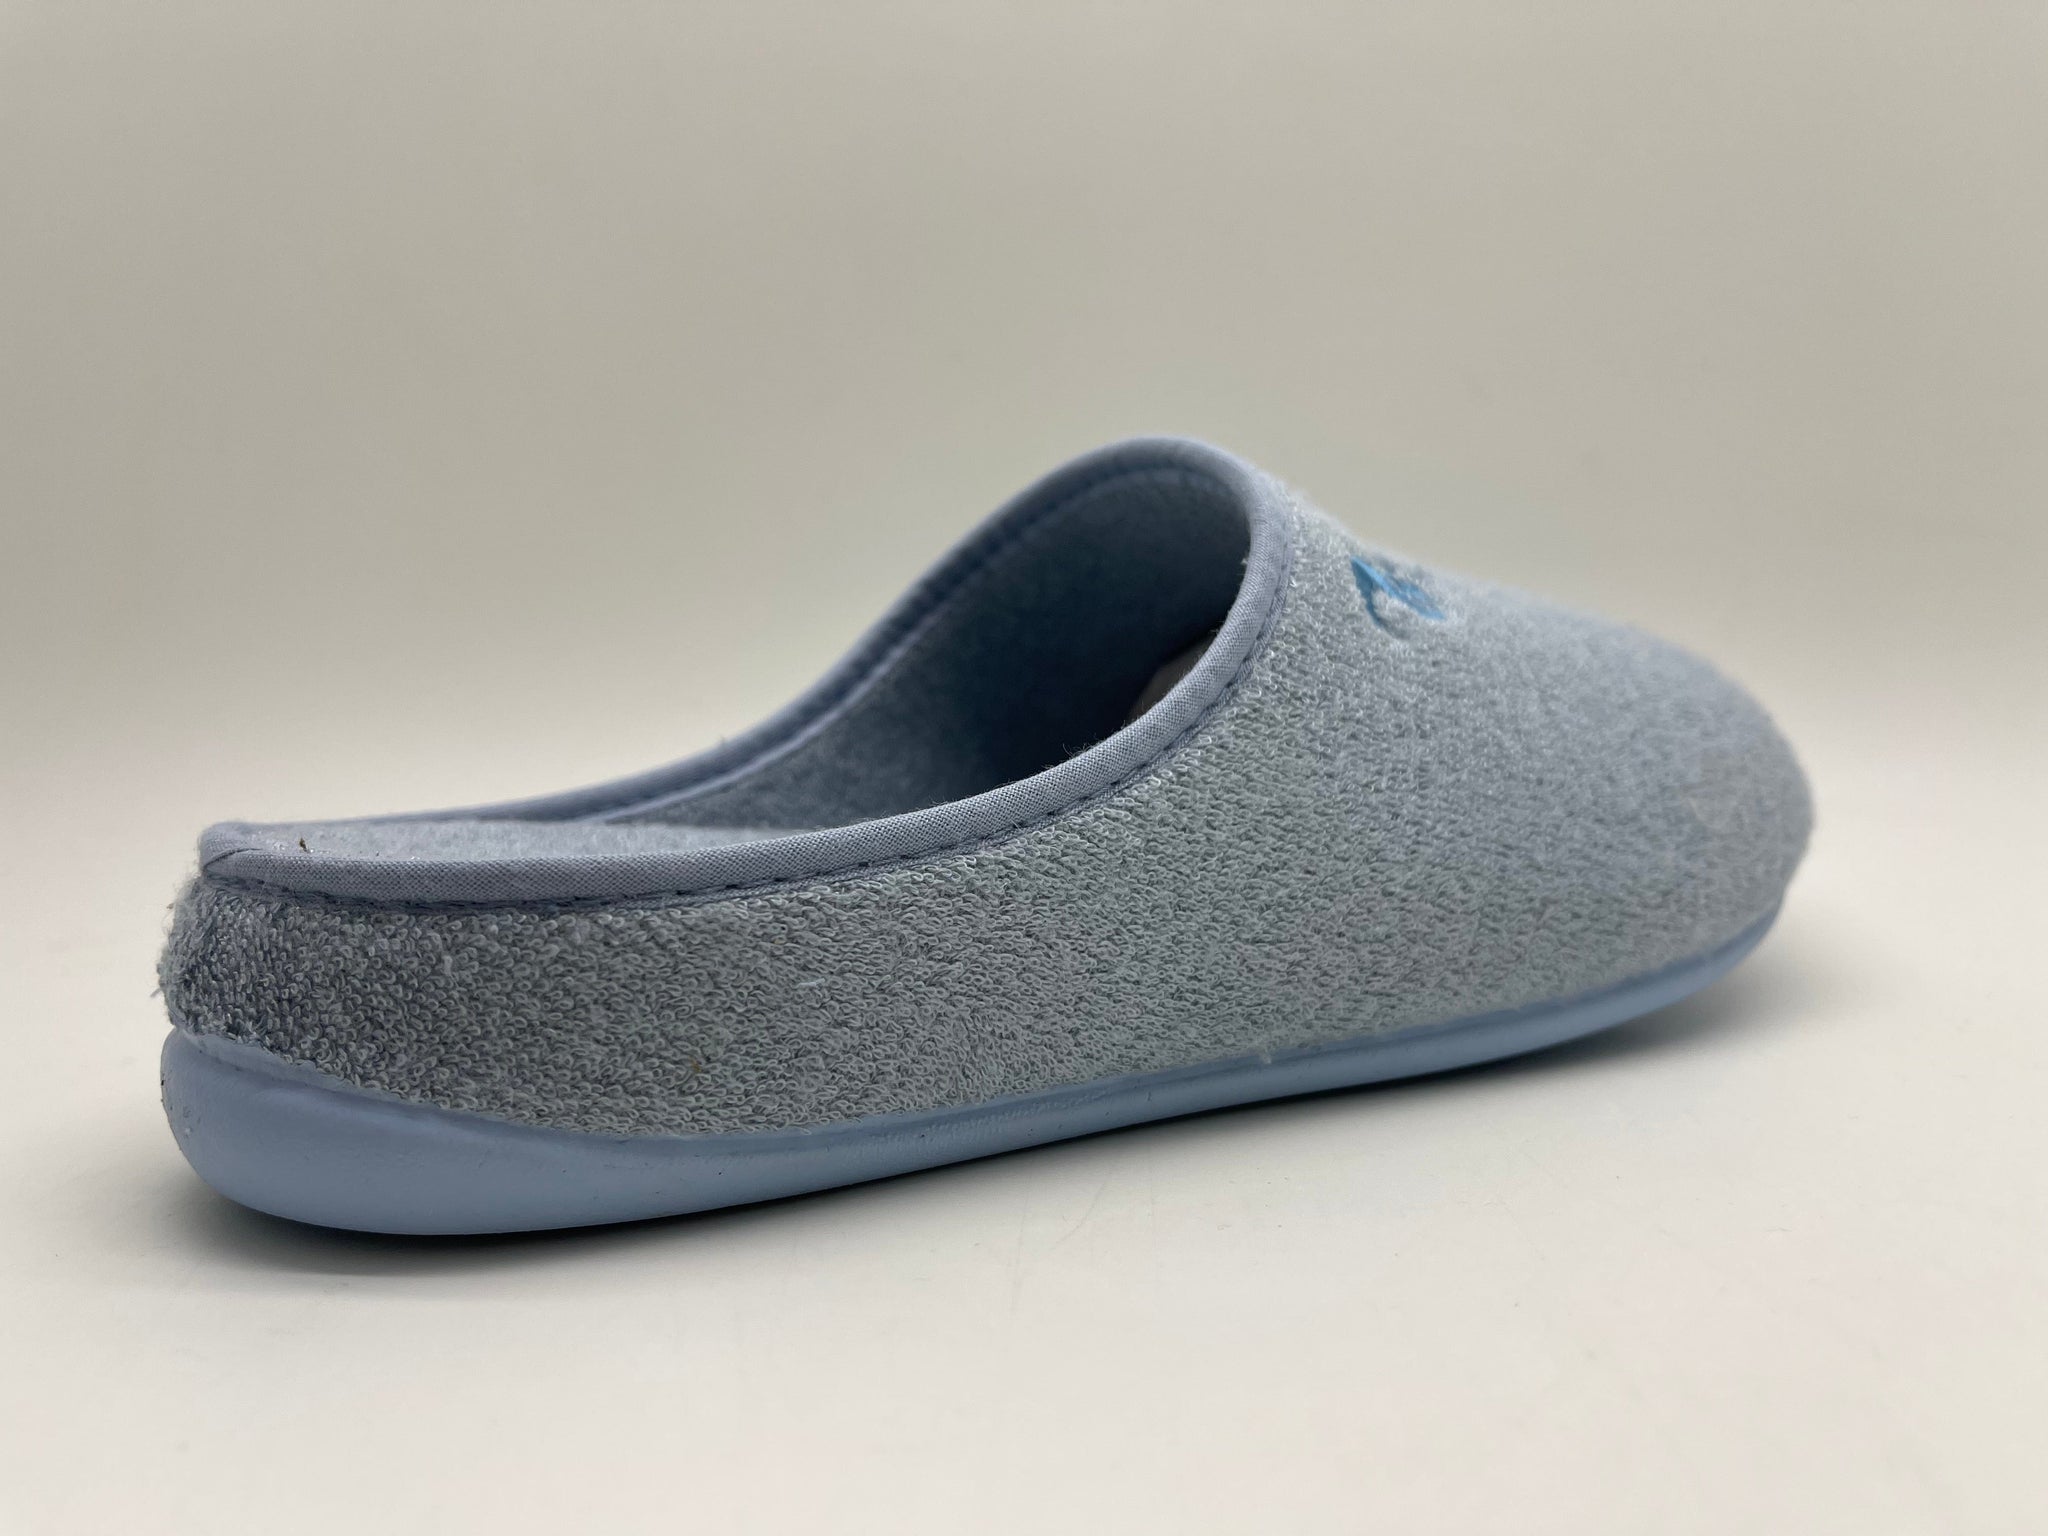 NAT 2 calzado thies 1856 ® Bamboo Slipper vegan indigo azul claro (W/M) moda sostenible moda ética